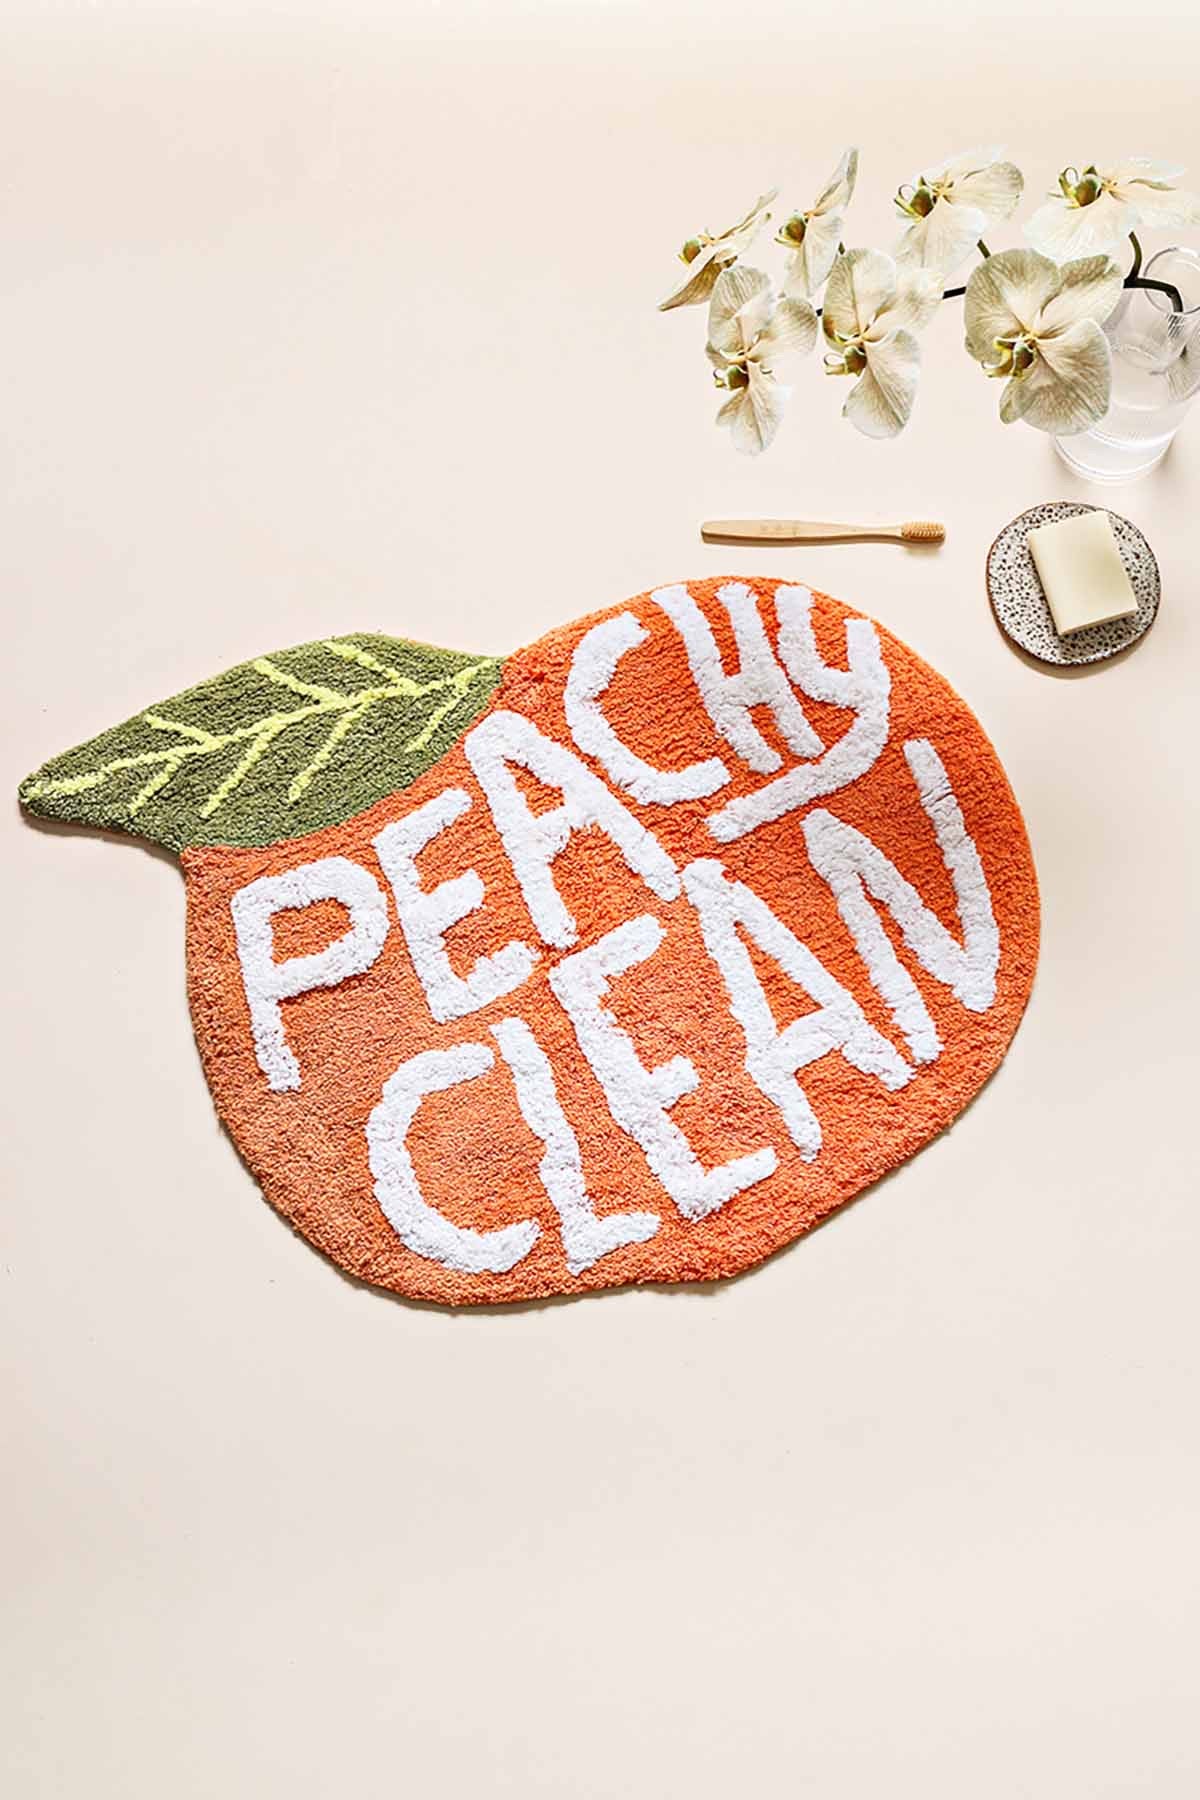 Miss April - Peach Bath Mat ‘Peachy Clean’